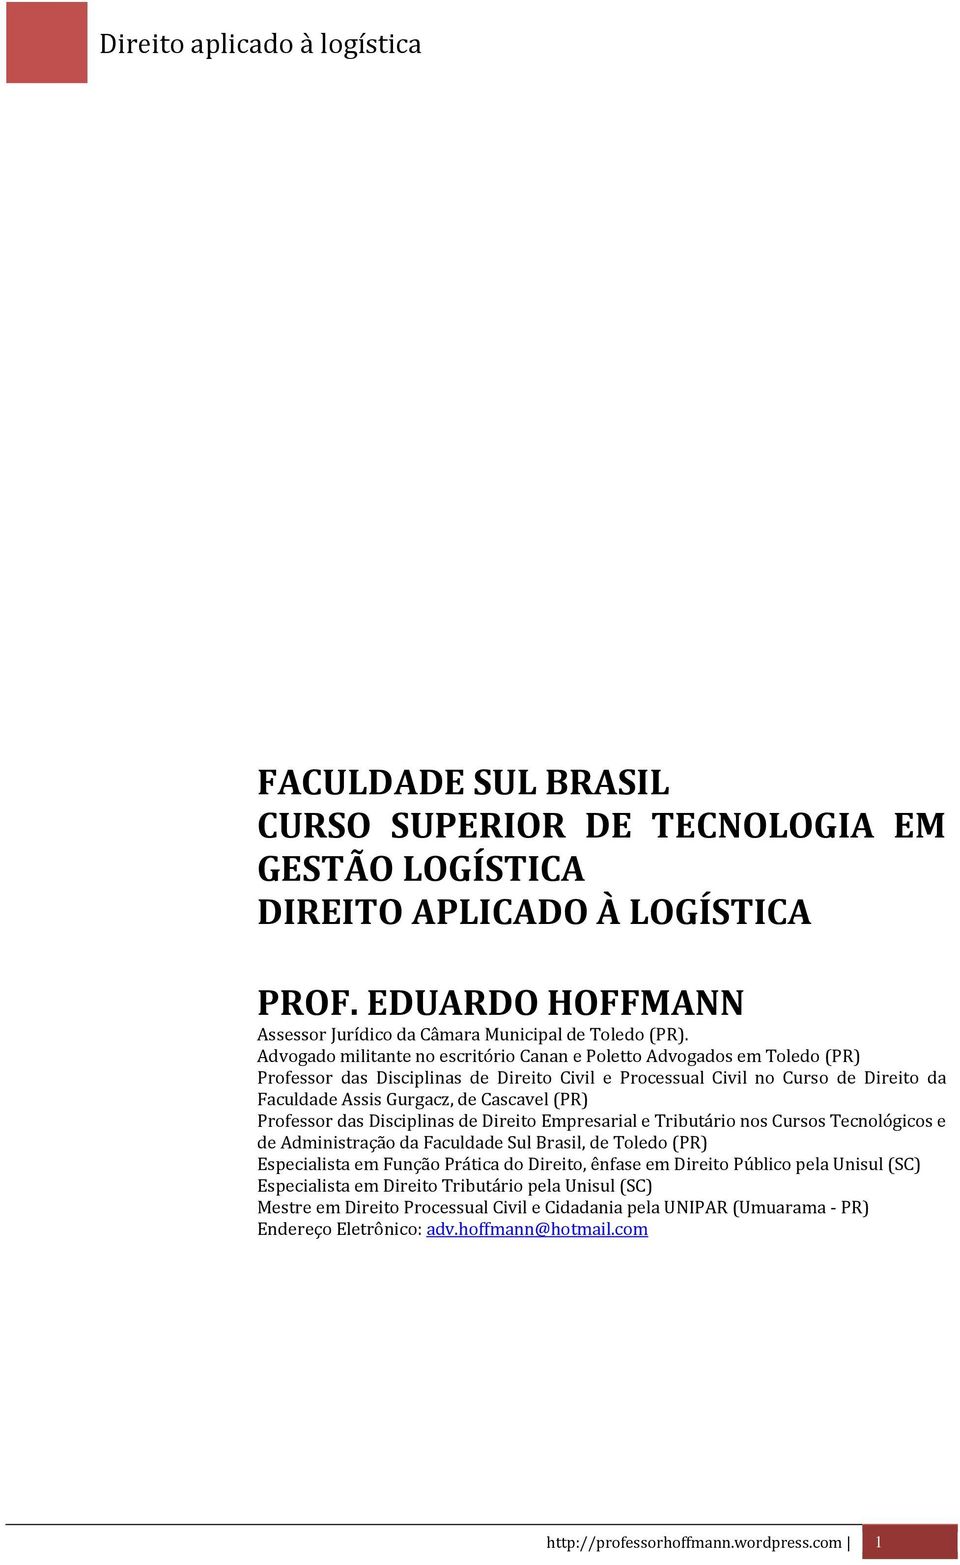 (PR) Professor das Disciplinas de Direito Empresarial e Tributário nos Cursos Tecnológicos e de Administração da Faculdade Sul Brasil, de Toledo (PR) Especialista em Função Prática do Direito, ênfase